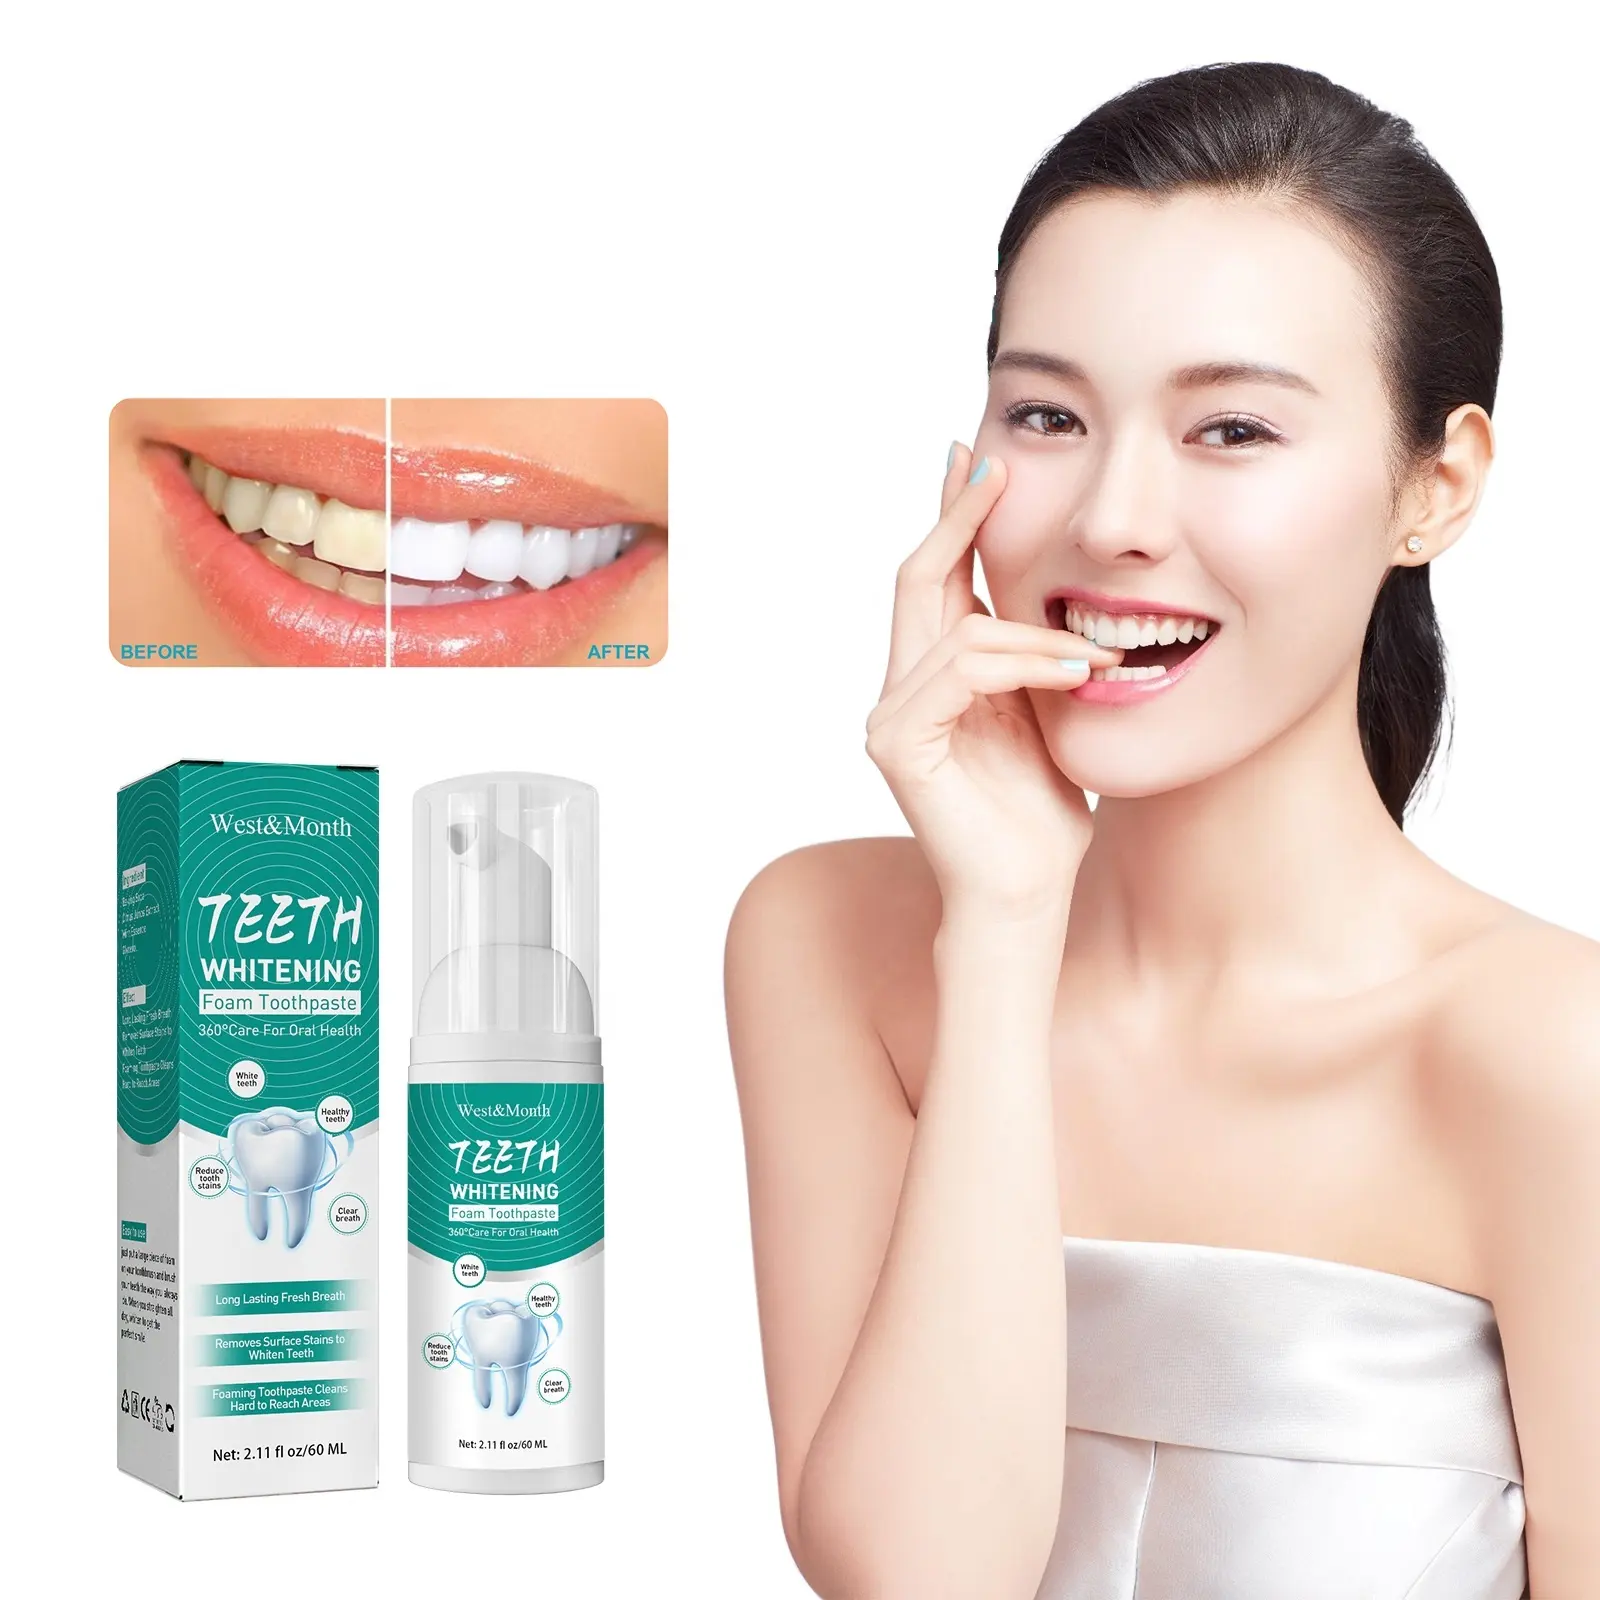 ยาสีฟันโฟมมูสเพื่อฟันขาวทำความสะอาดช่องปากเพื่อความกระจ่างใสจาก100% ตะวันตกและเดือนกำจัดคราบตามธรรมชาติ